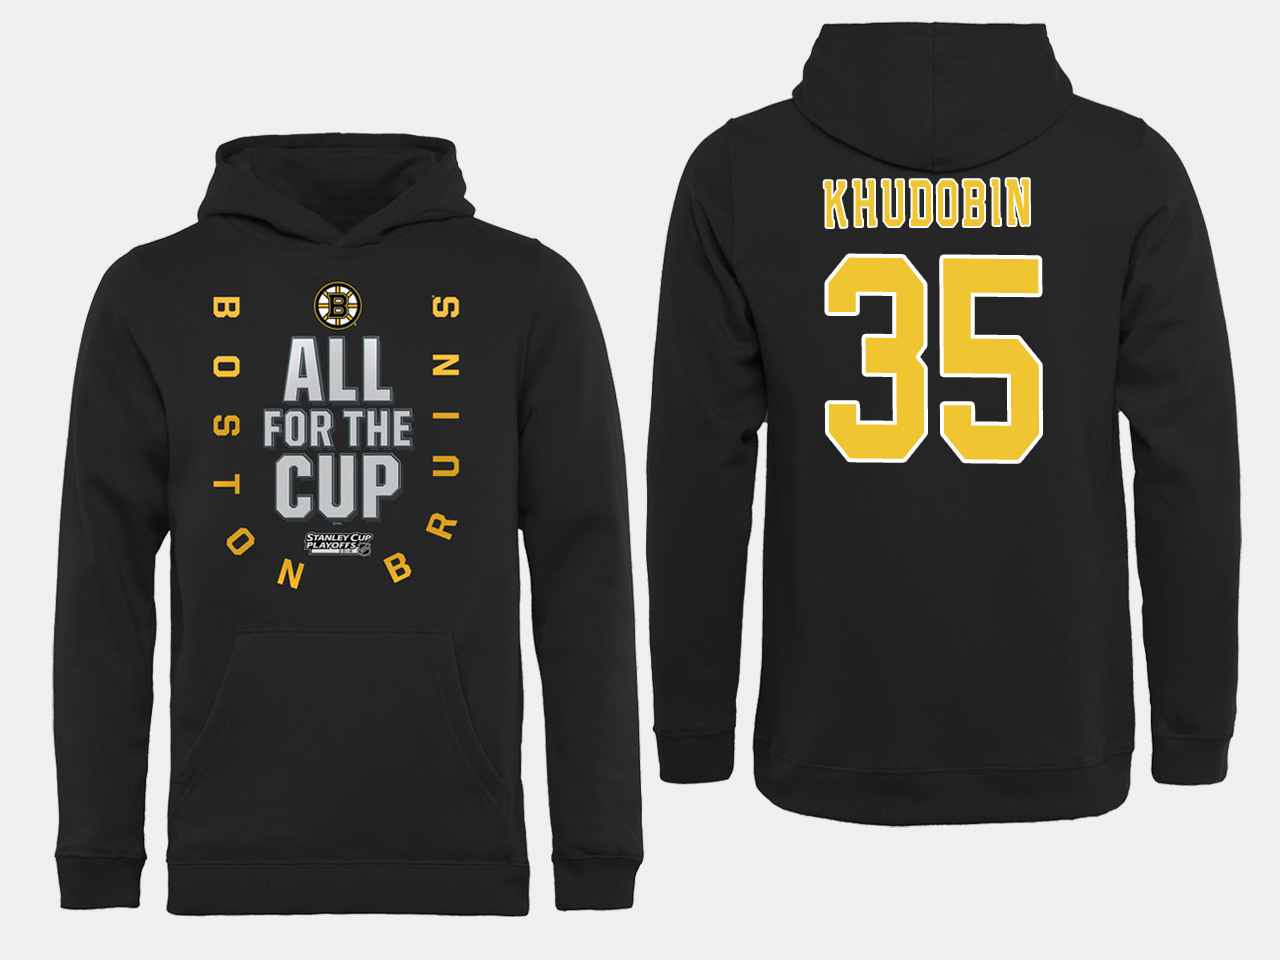 NHL Men Boston Bruins 35 Khudobin Black All for the Cup Hoodie